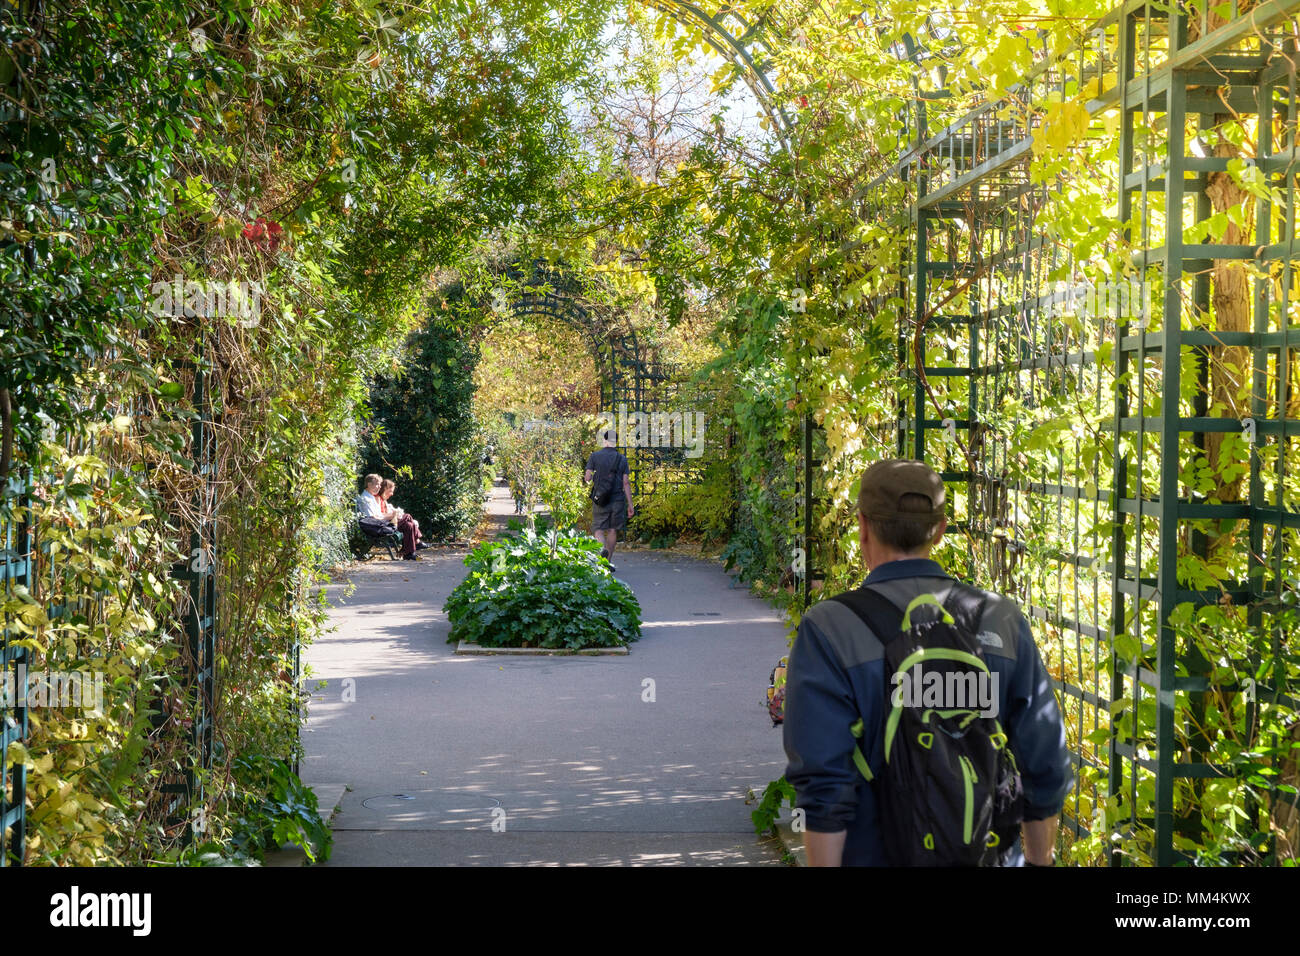 Les personnes bénéficiant de la promenade plantée ou coulée verte René-Dumont, augmentation de parc dans 12e arrondissement, Paris, France Banque D'Images